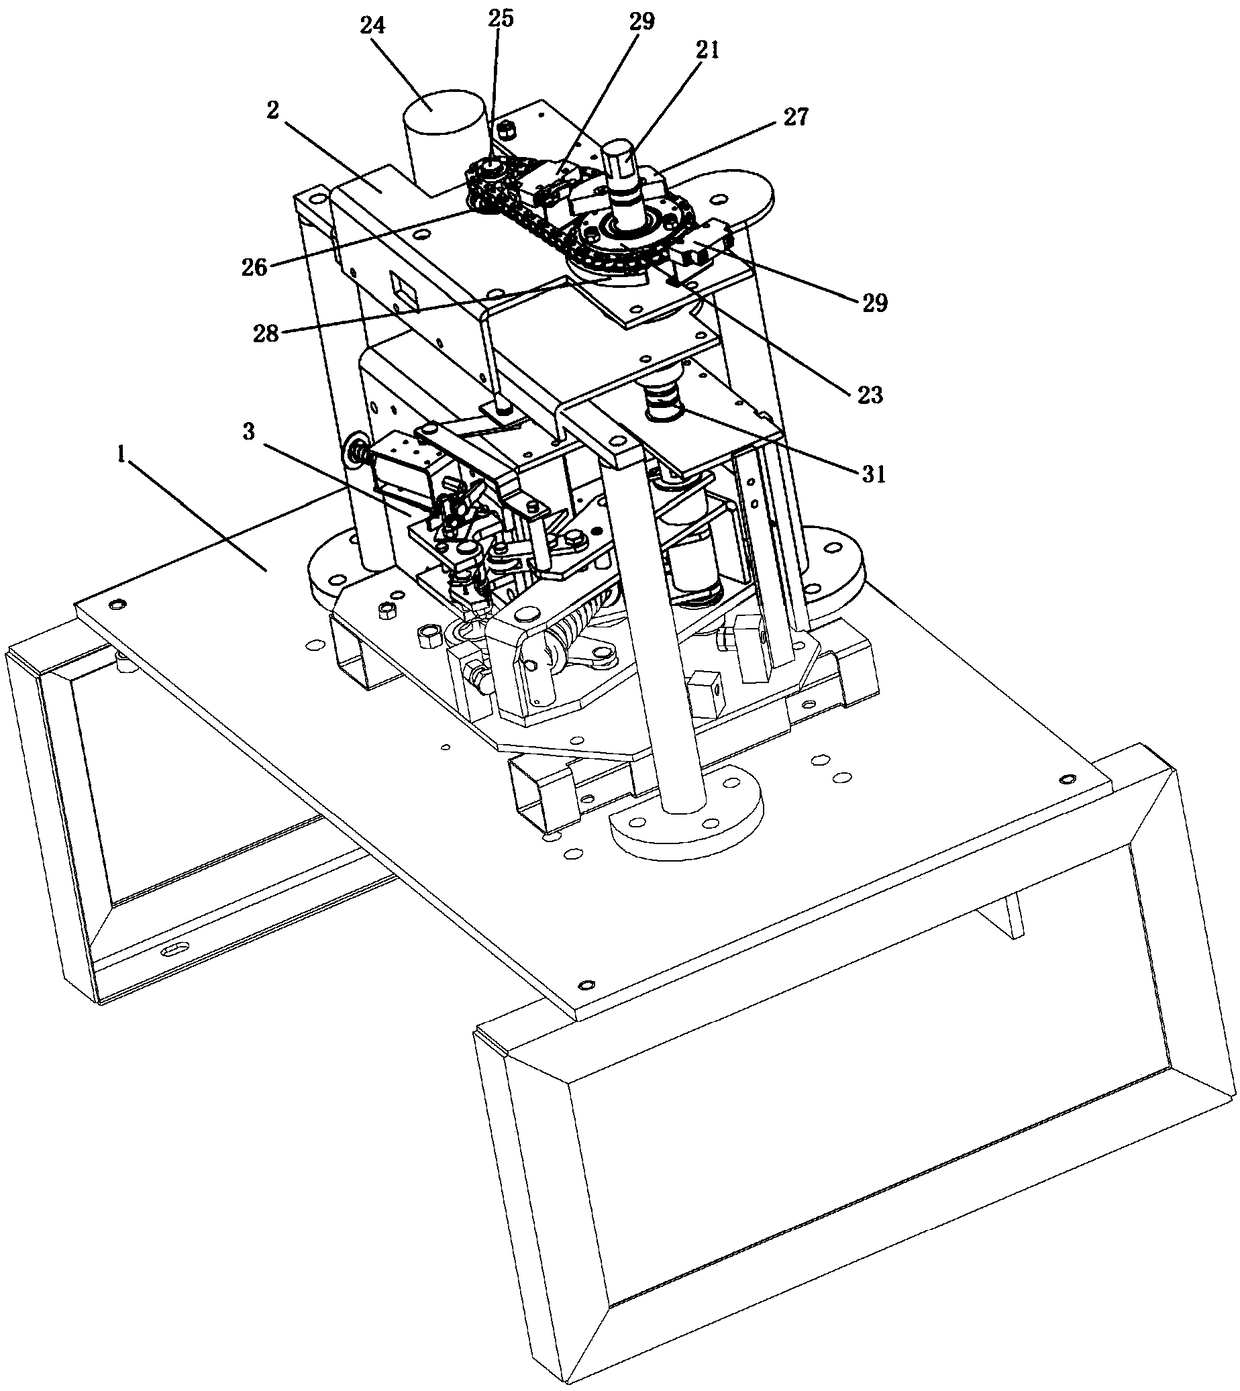 Circuit breaker operating mechanism test fixture